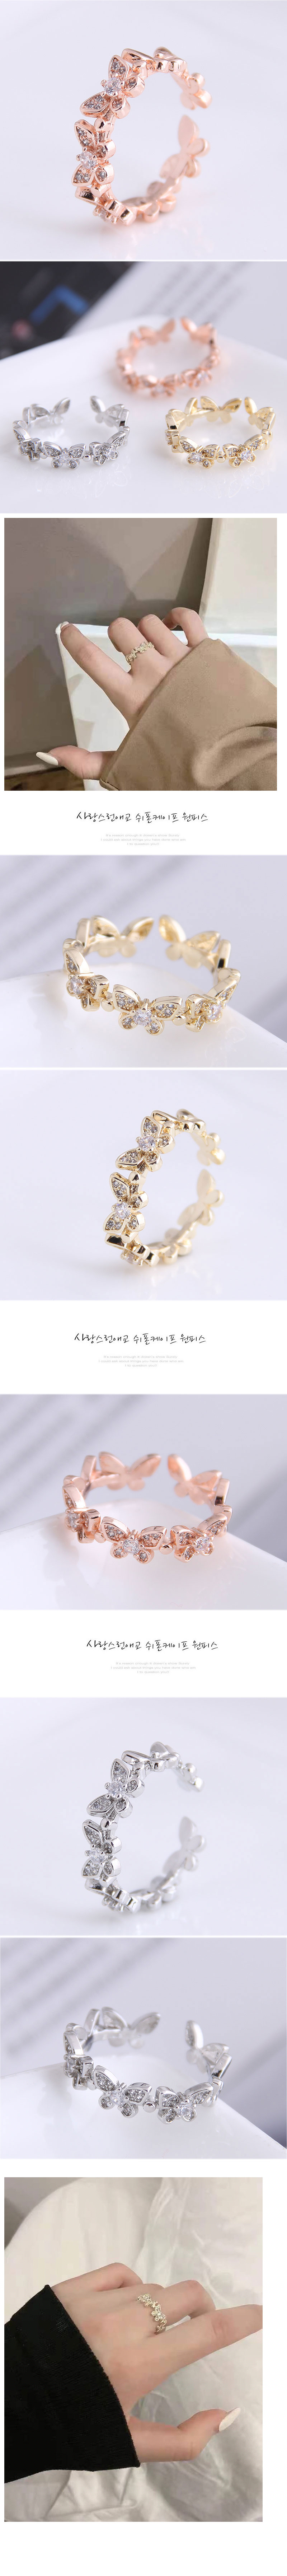 Offener Ring mit eingelegtem Zirkonschmetterling der koreanischen Modepicture1